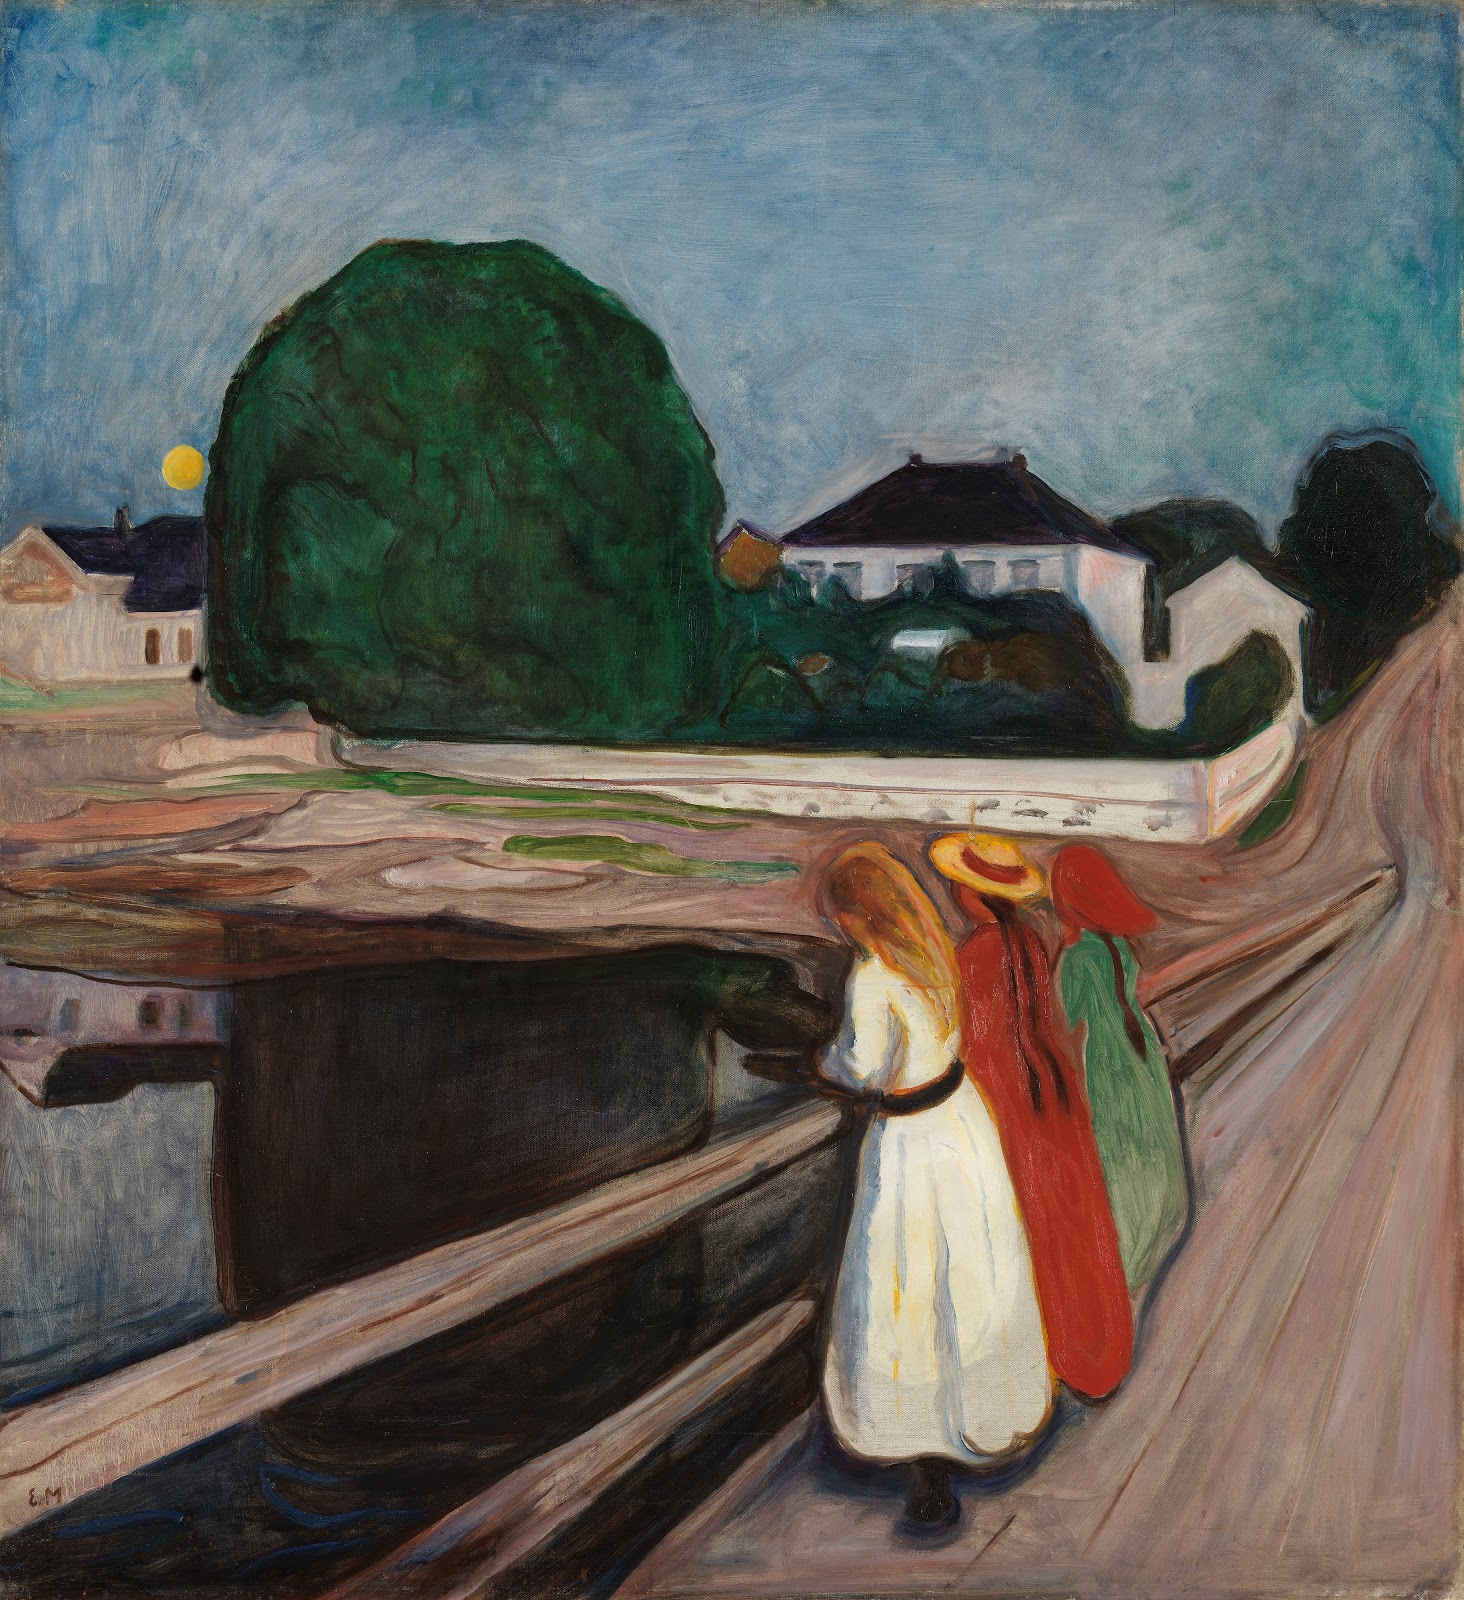 Edvard+Munch-1863-1944 (21).jpg